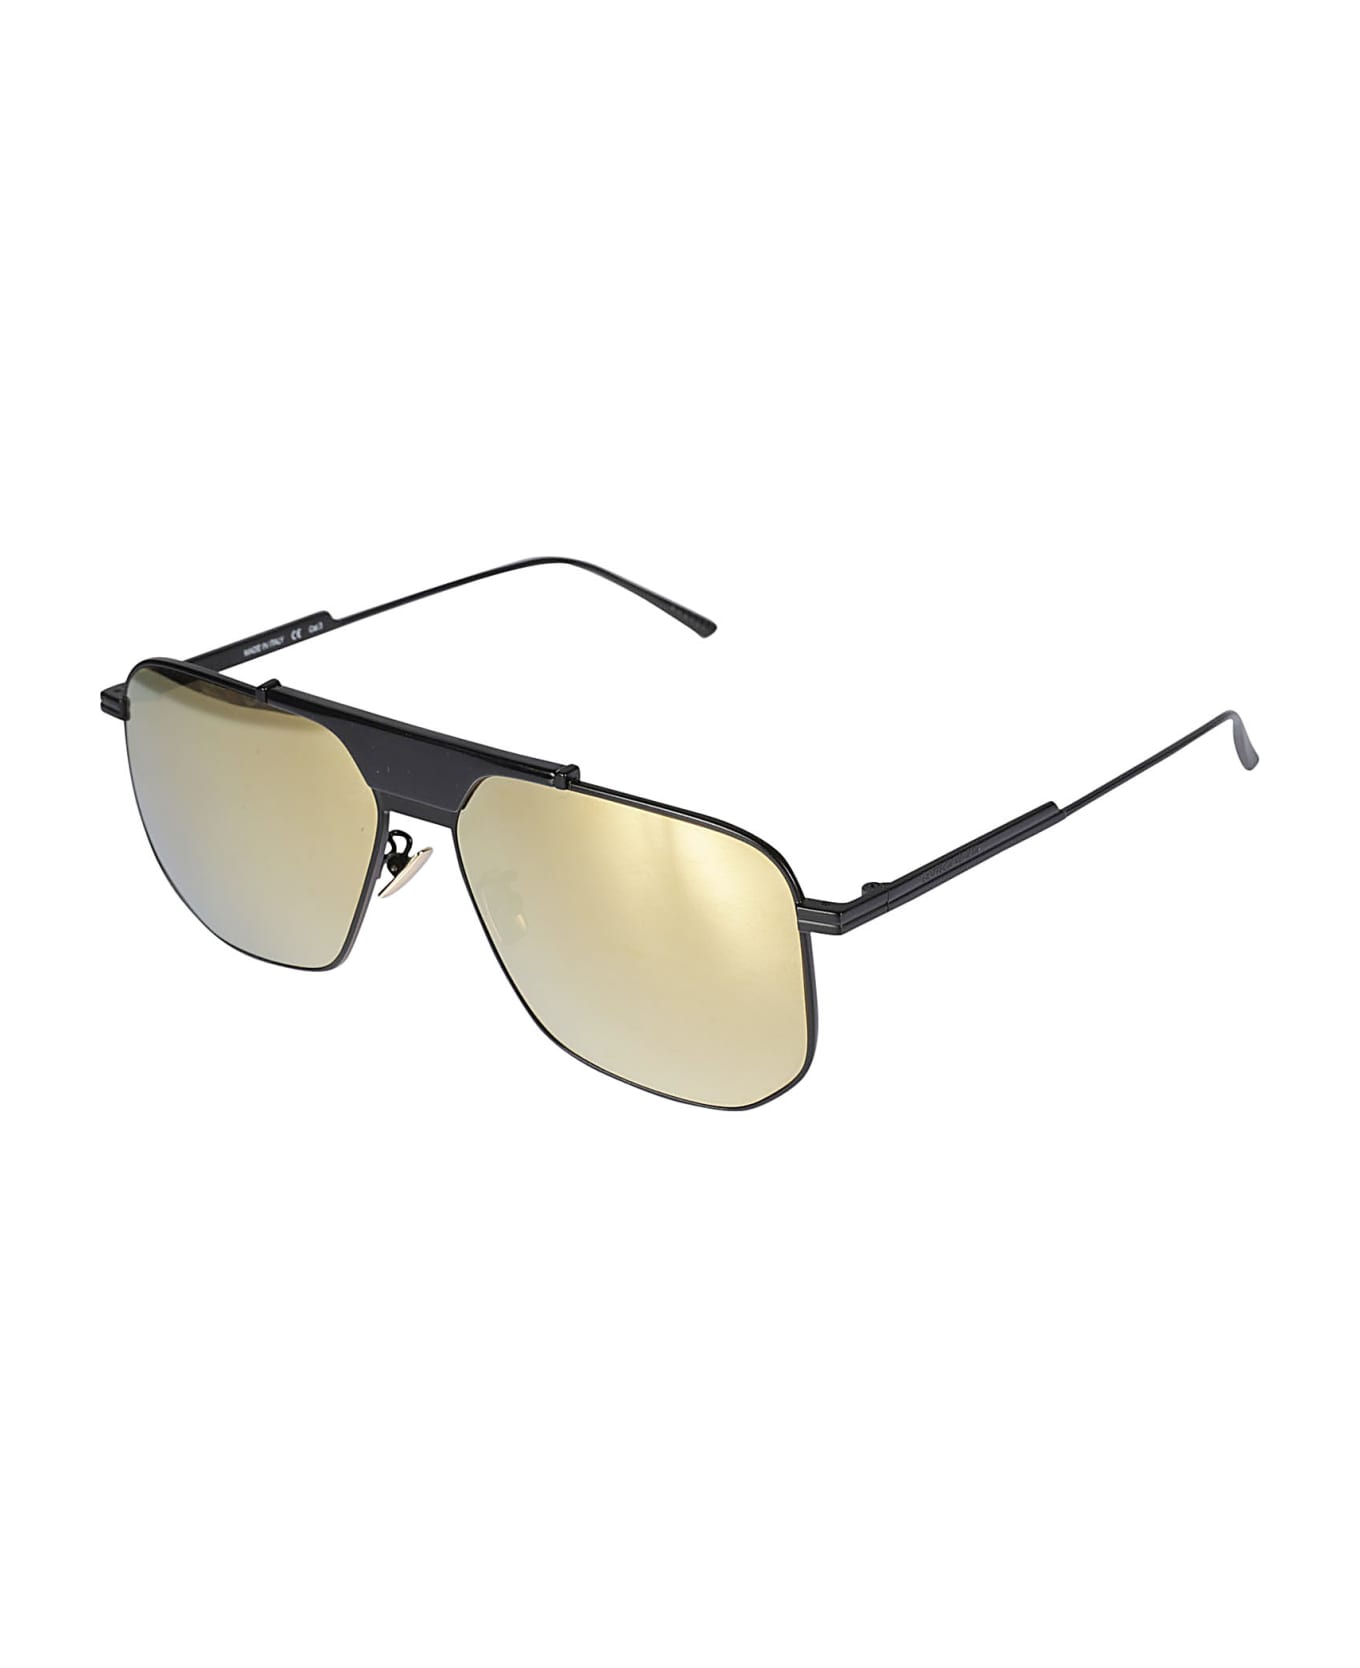 Bottega Veneta Eyewear Hexagonal-framed Sunglasses - 005 black black gold サングラス